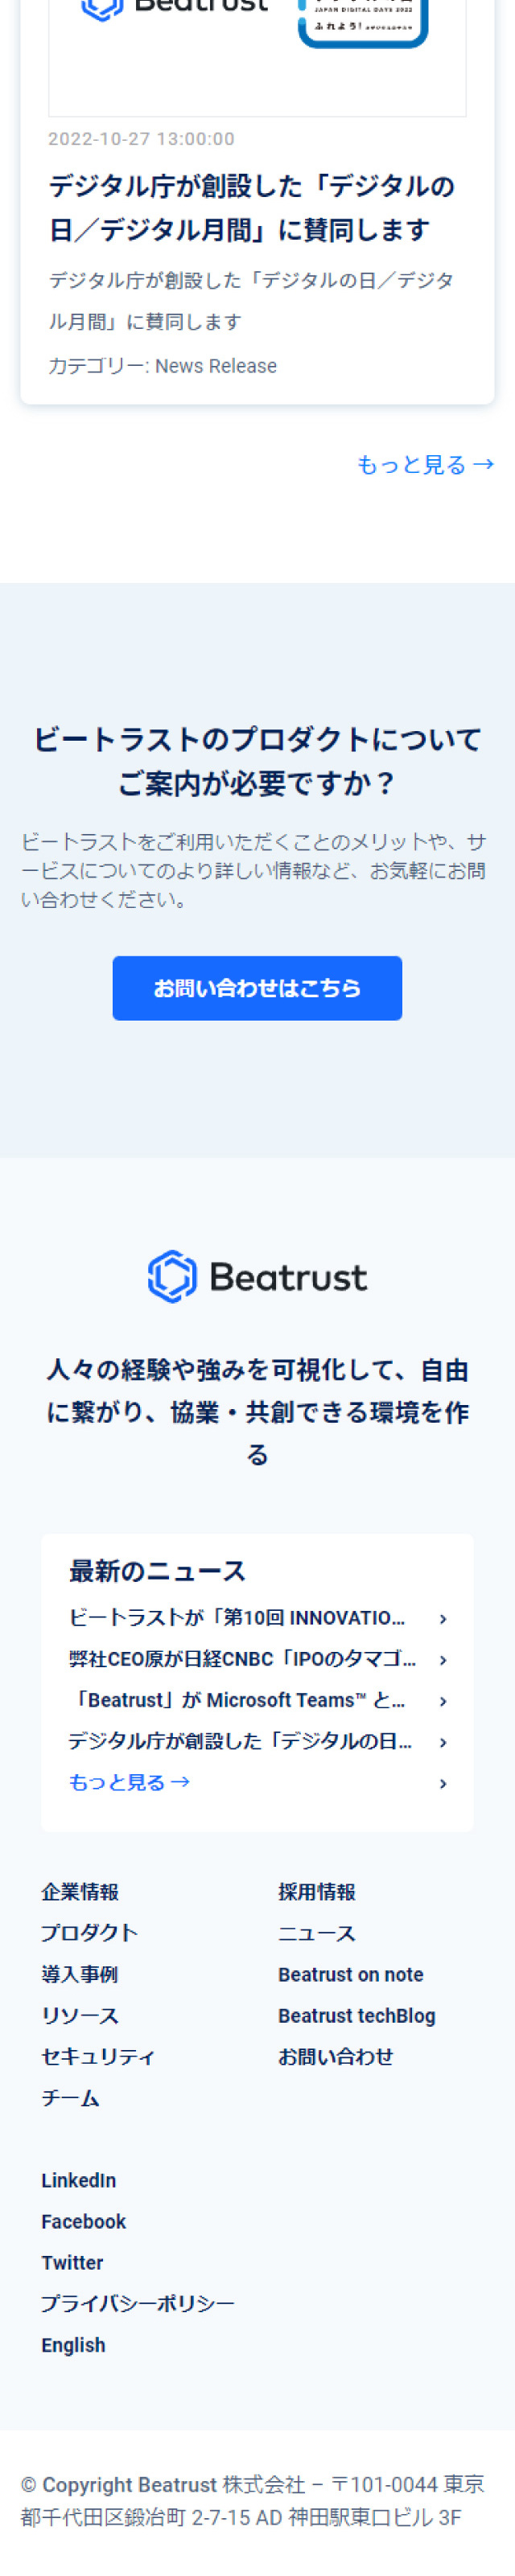 Beatrust_sp_2